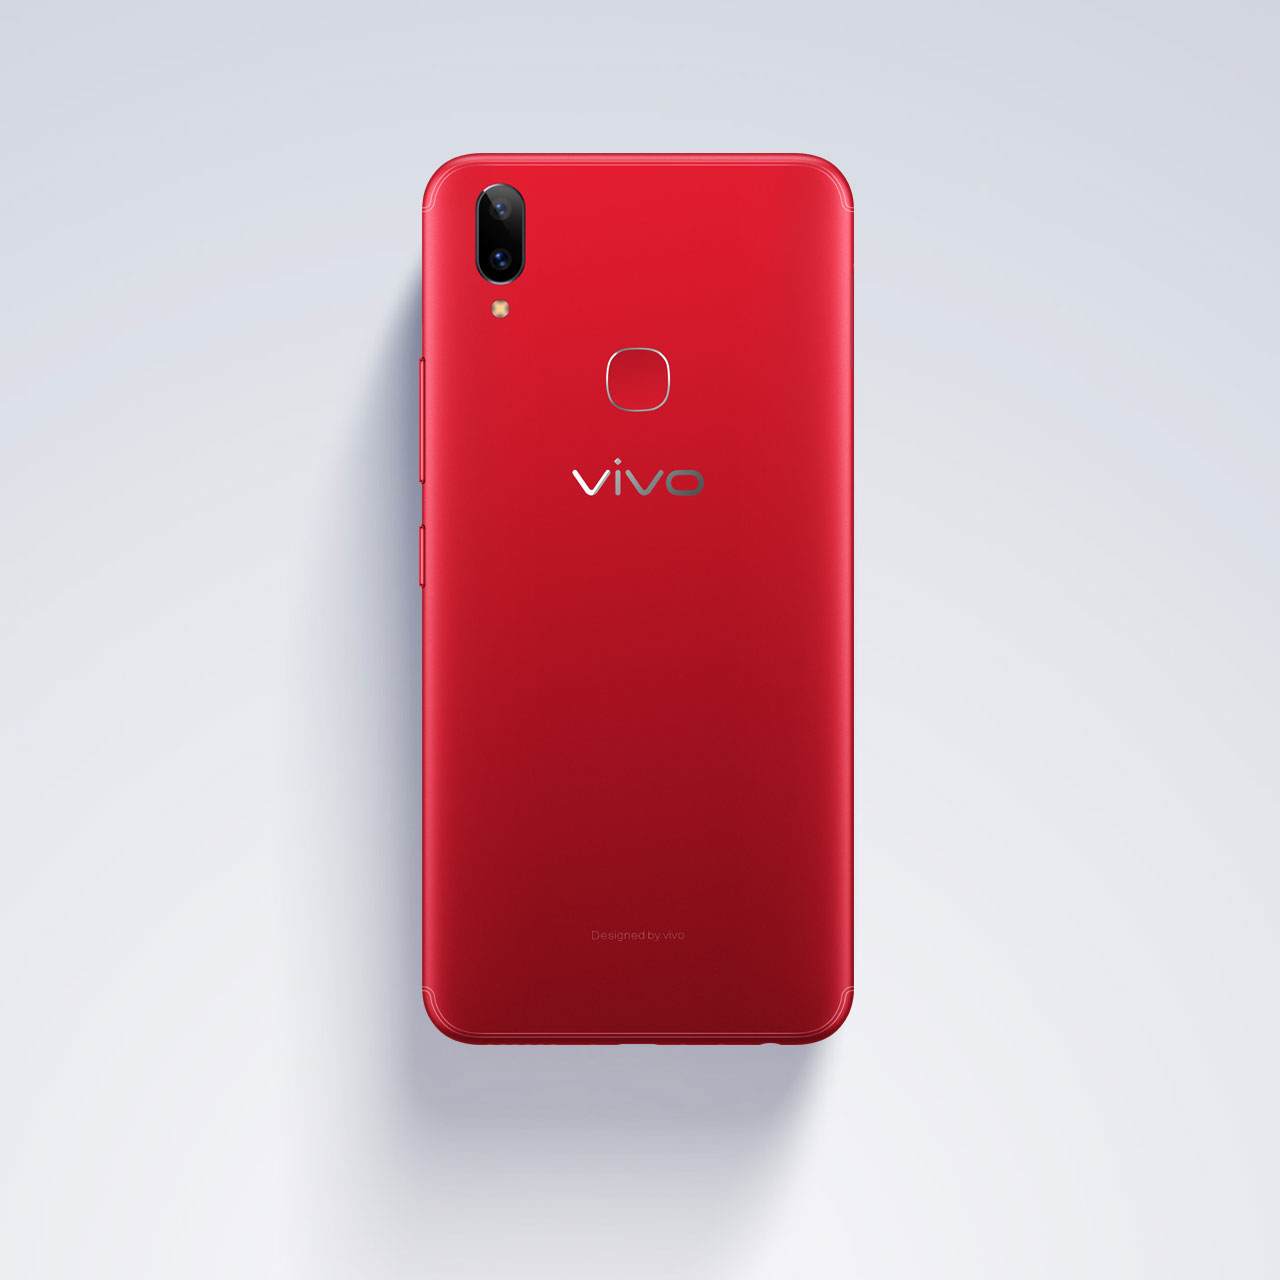 เปิดตัว Vivo V9 รุ่นอัพสเปคที่อินโดฯ อัพแรม 6 GB ใช้ชิป Snapdragon 660 AI เอาใจคอเกม !!